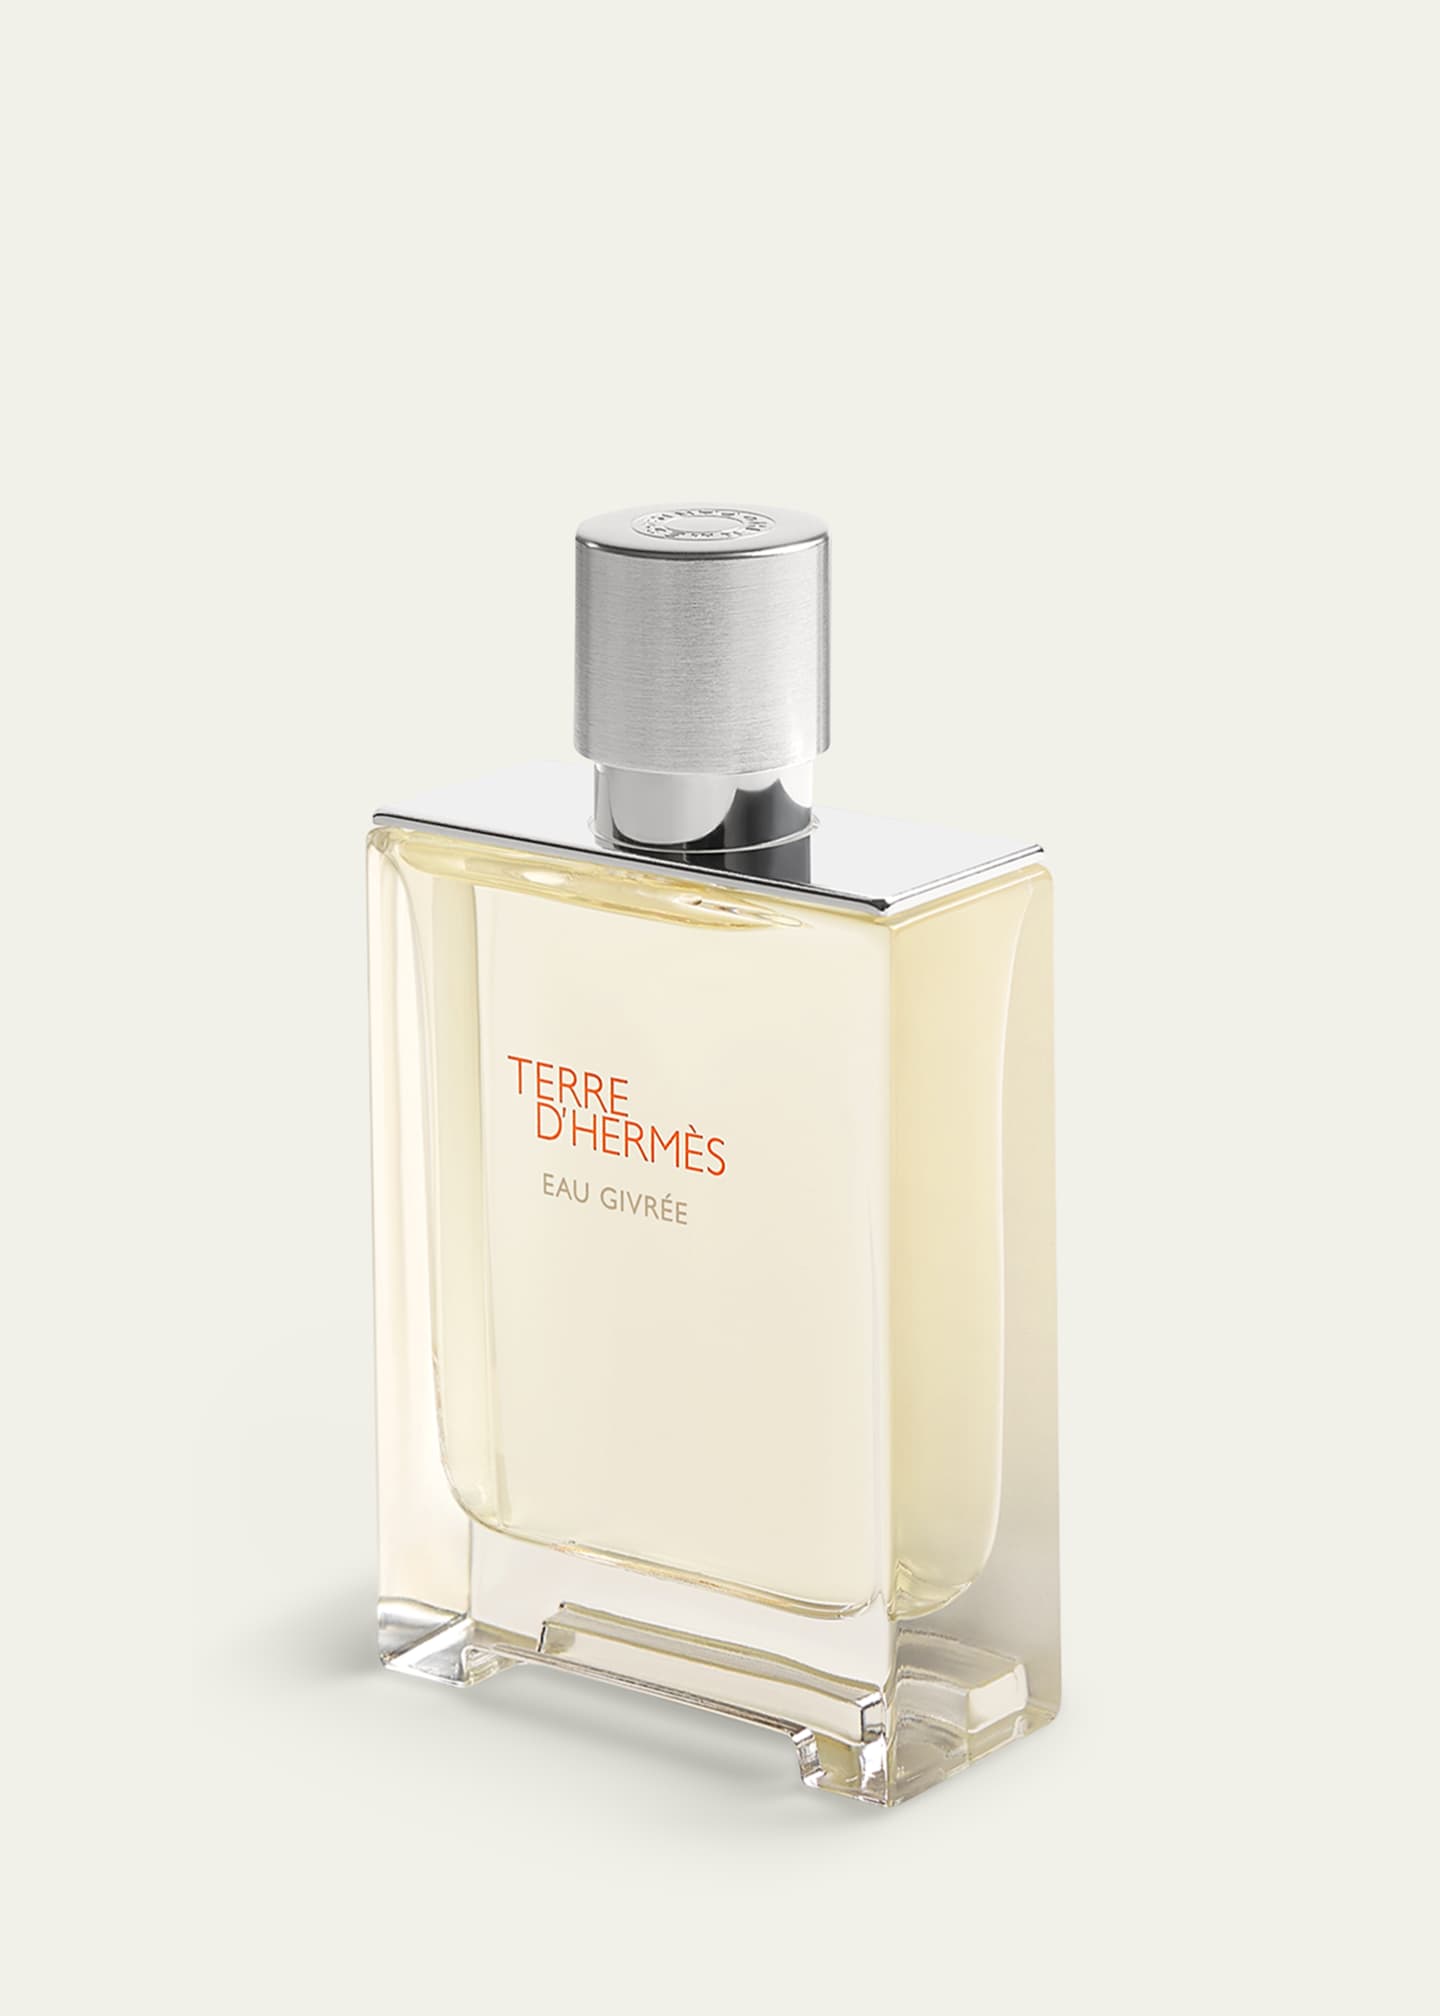 Hermès Terre d’Hermes Eau Givree Eau de Parfum, 3.4 oz. - Bergdorf Goodman